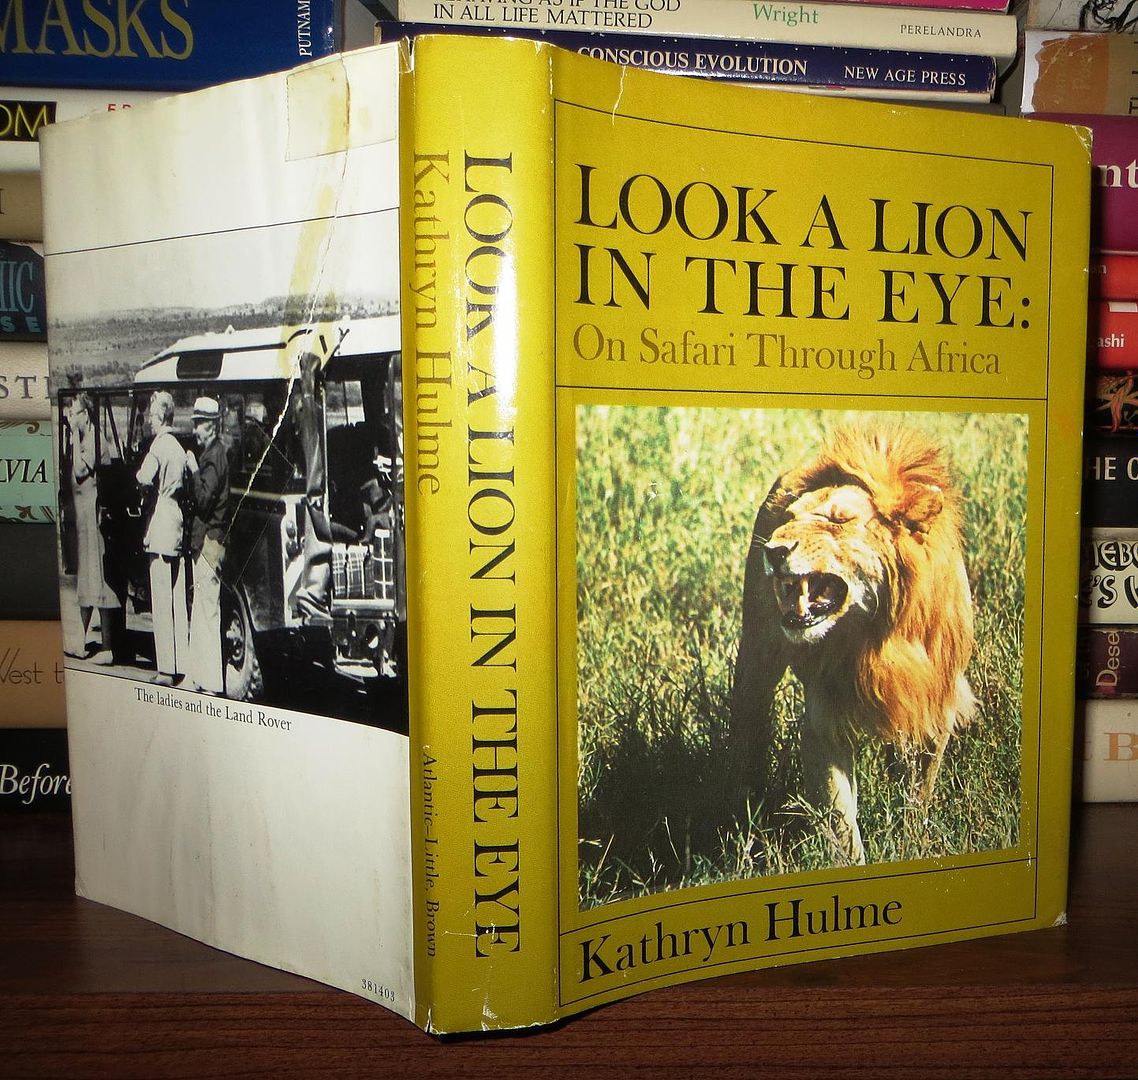 HULME, KATHRYN & ELNA RAPP (JACKET) - Look a Lion in the Eye on Safari Through Africa